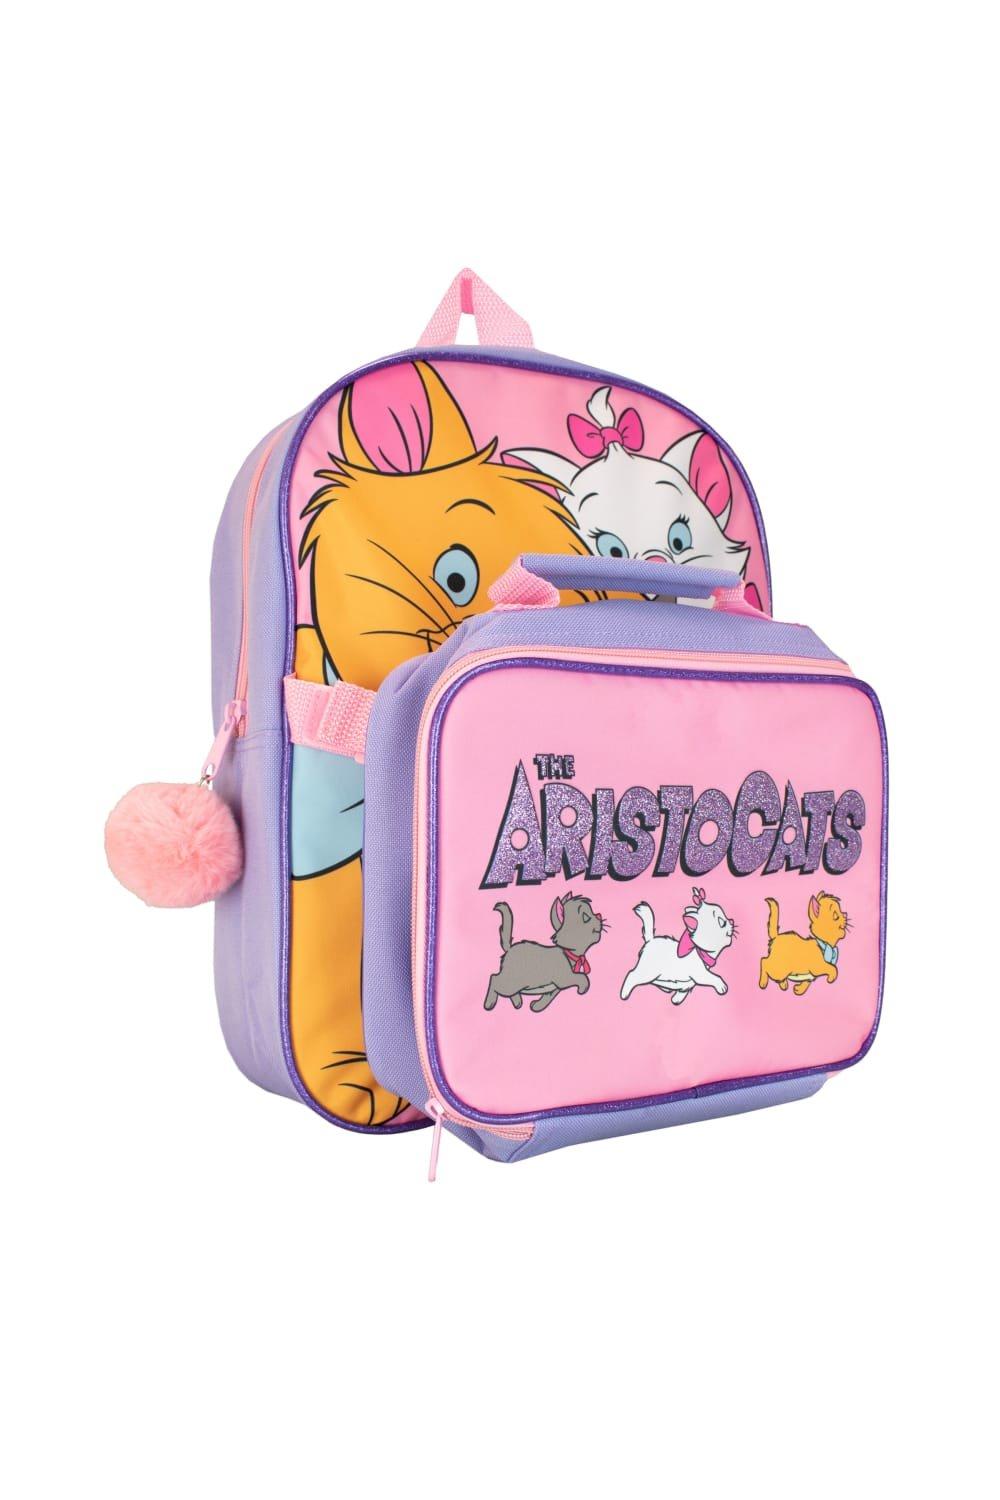 Набор рюкзака и сумки для обеда Aristocats Disney, розовый детский набор из рюкзака и сумки для завтрака история игрушек disney синий